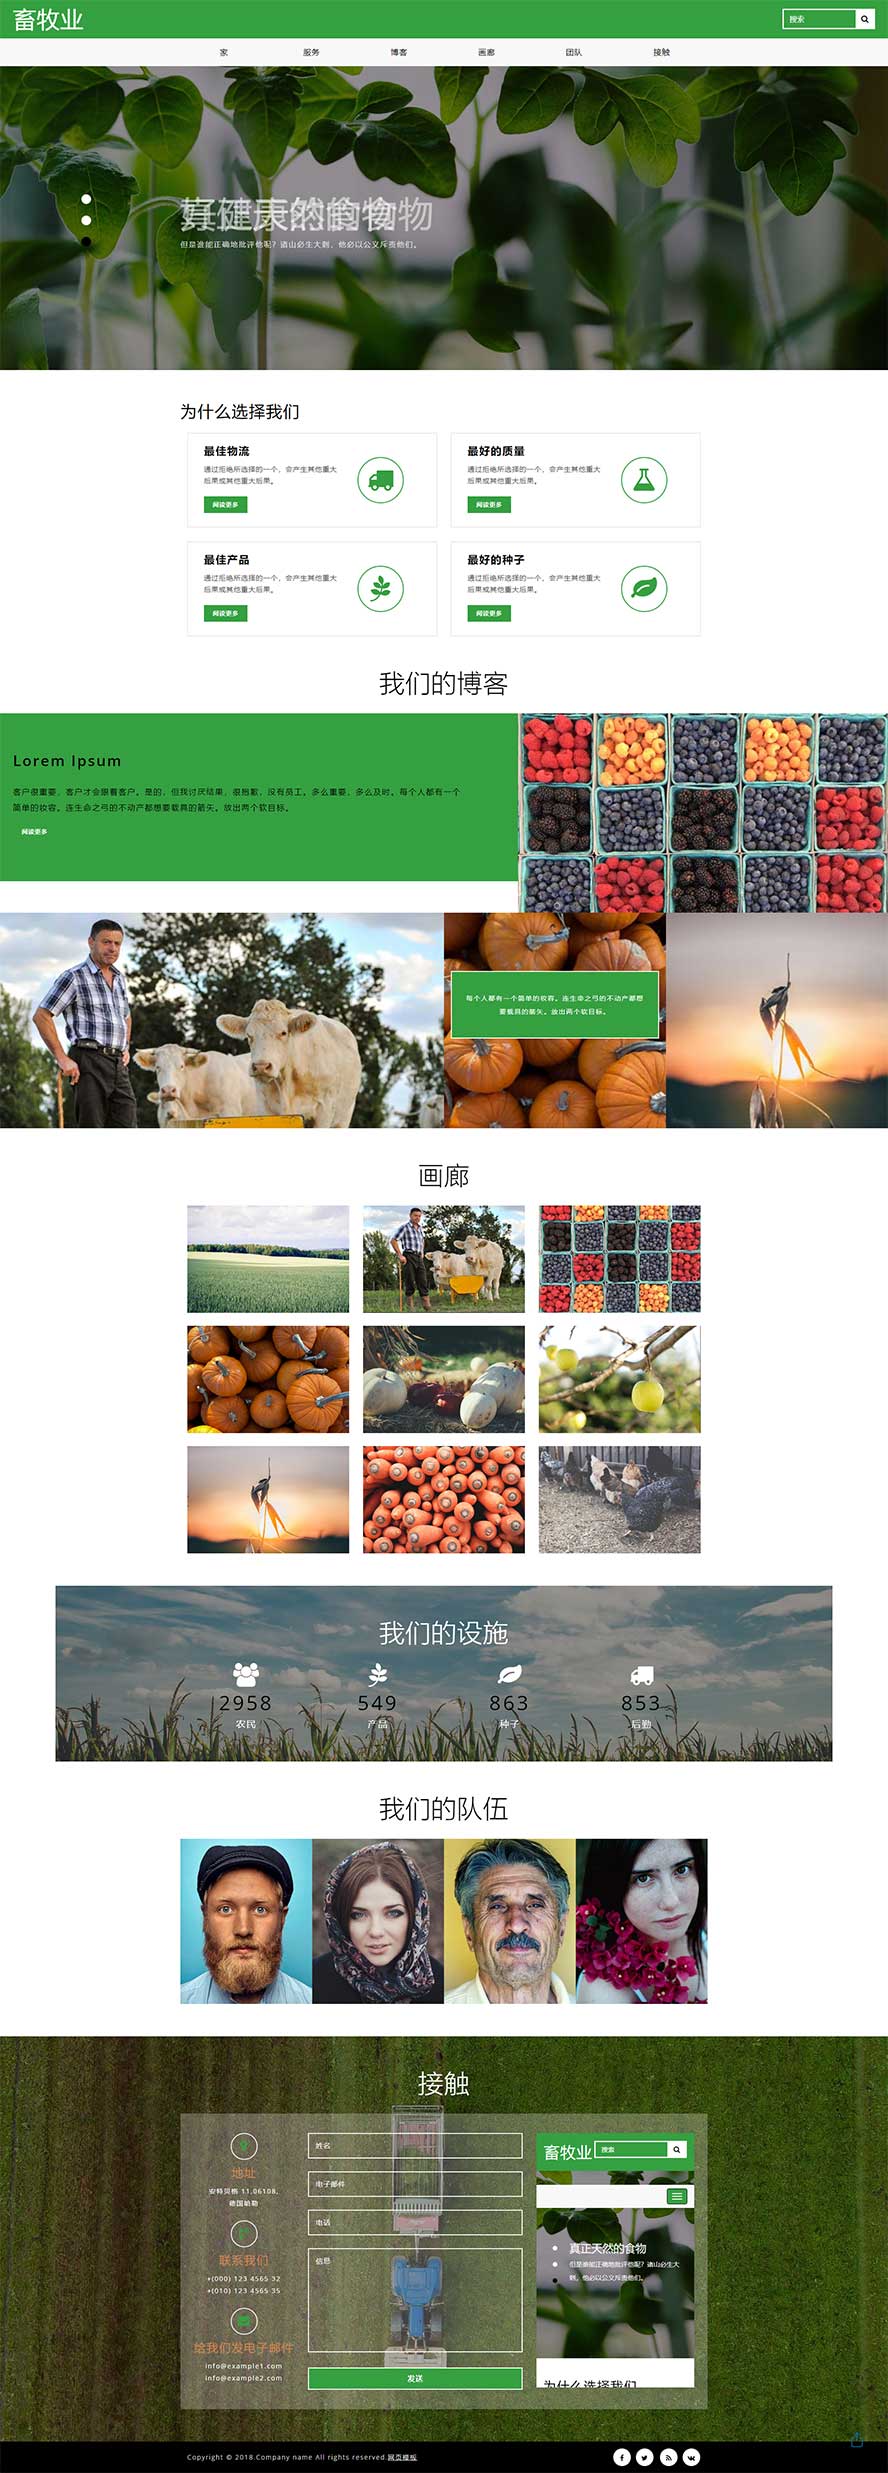 水果单页面模板,蔬菜单页面模板,单页面模板